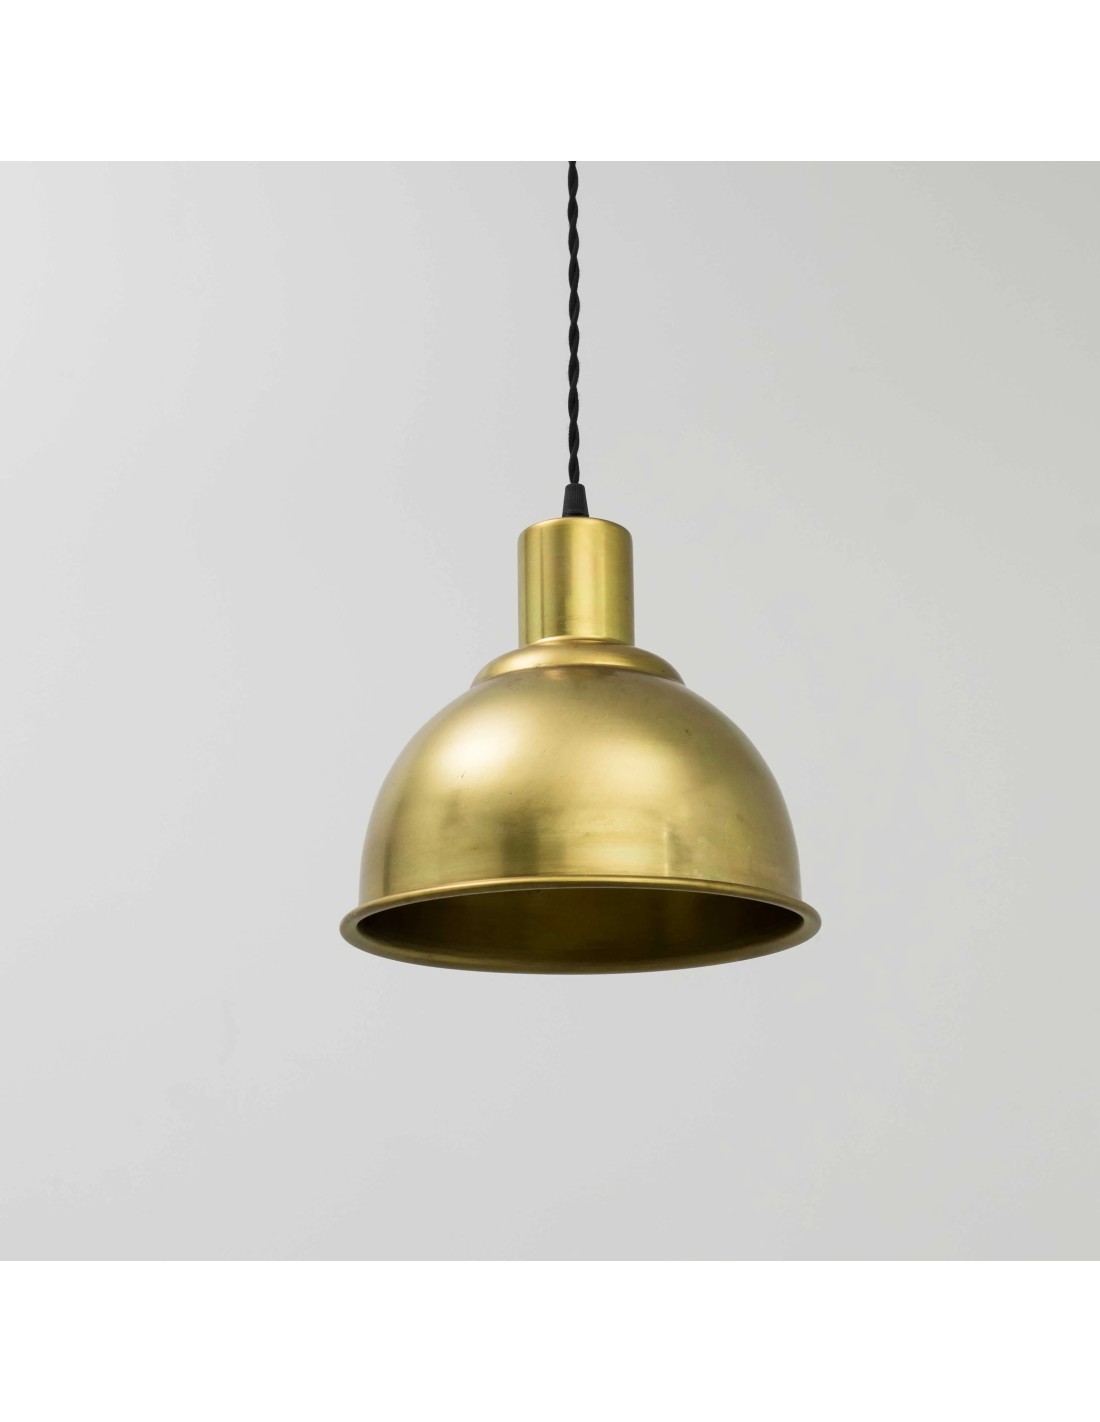 lámpara de techo vintage estilo industrial en forma de campana